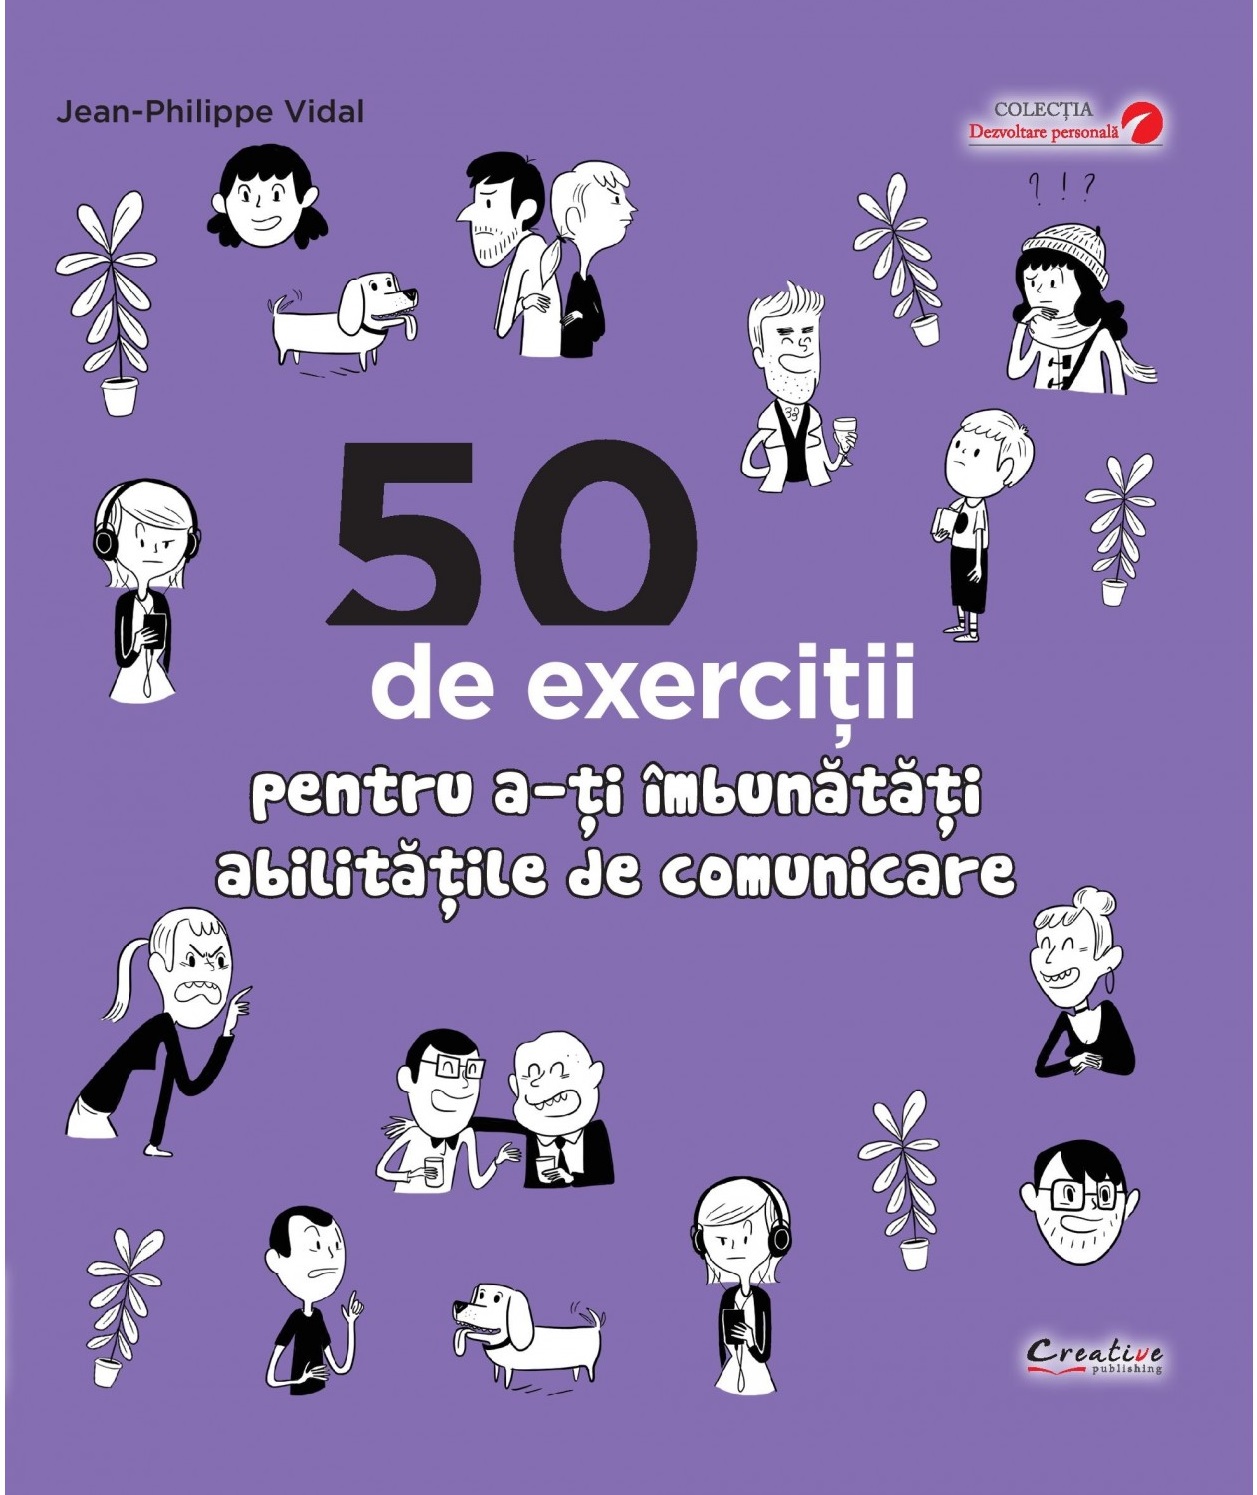 50 de exercitii pentru a-ti imbunatati abilitatile de comunicare | Jean-Philippe Vidal